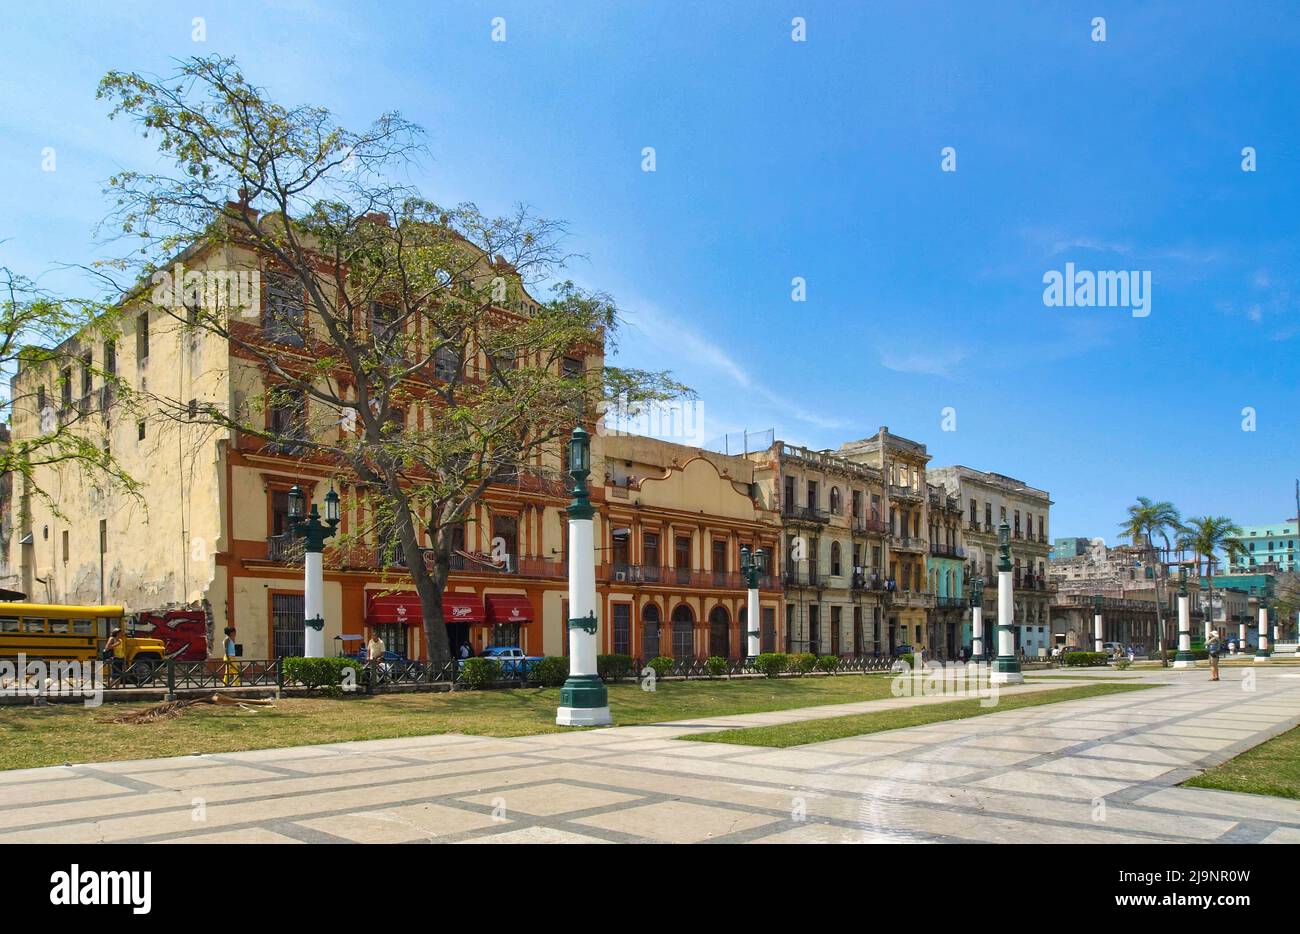 Die wunderschöne und farbenfrohe Hauptstadt Kubas, Havanna, eines der beliebtesten Reiseziele der Welt. Stockfoto